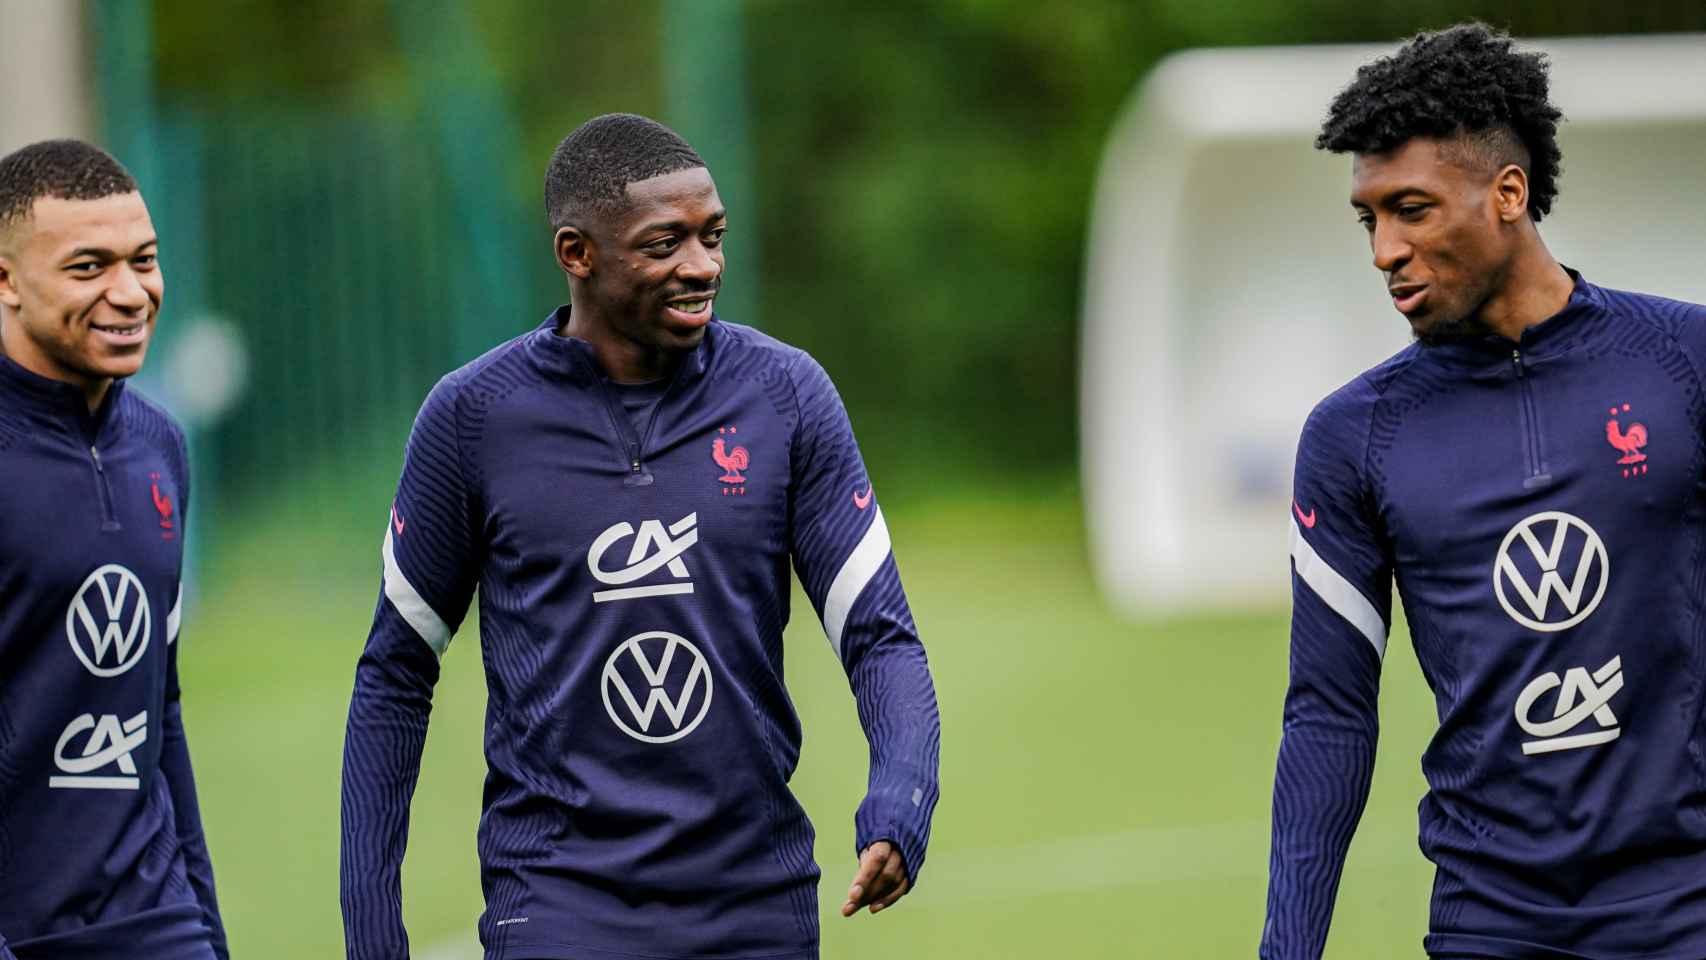 Dembelé entrenando con su selección / Équipe de France